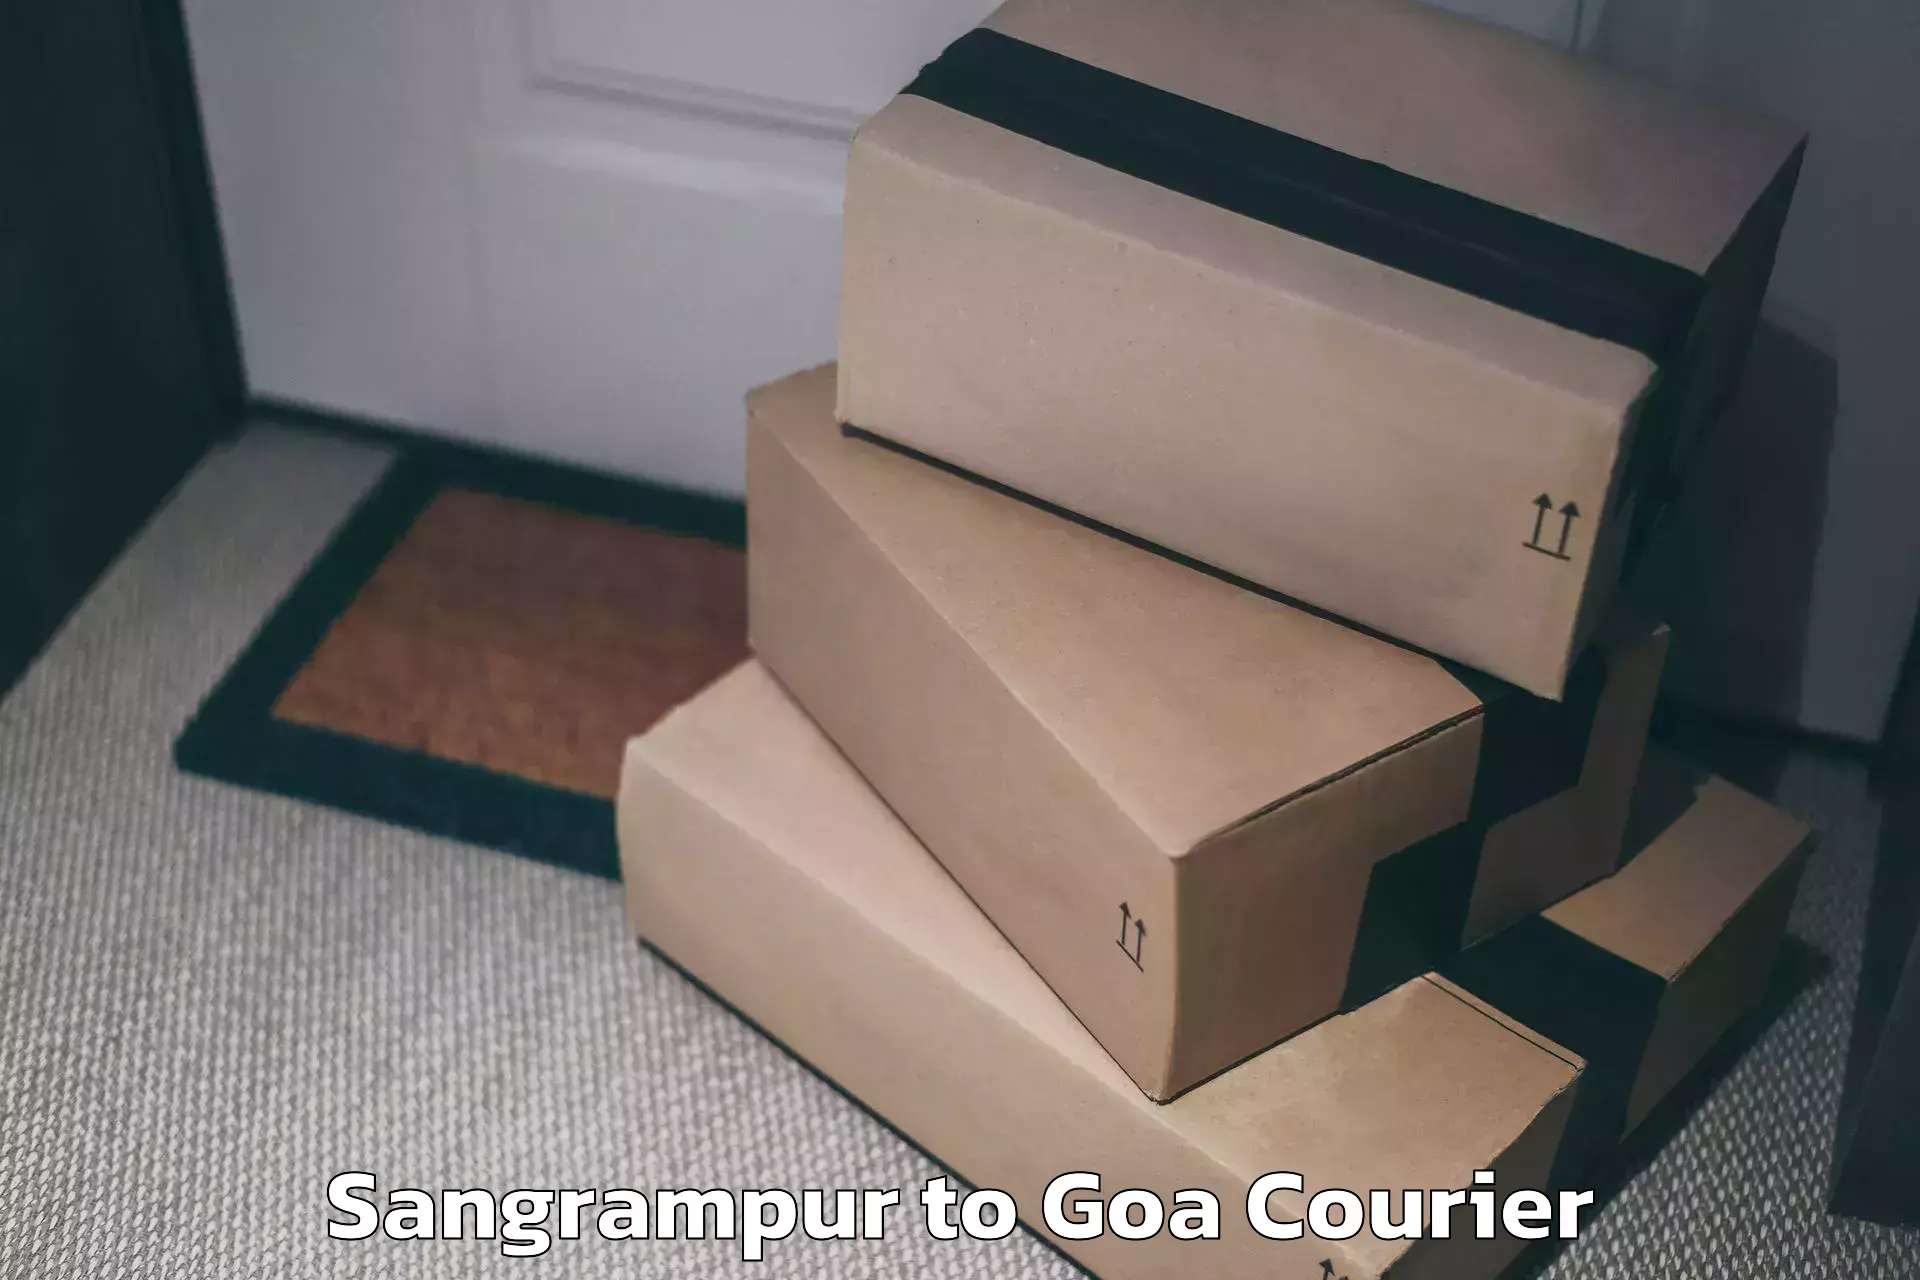 Baggage shipping service Sangrampur to Panjim